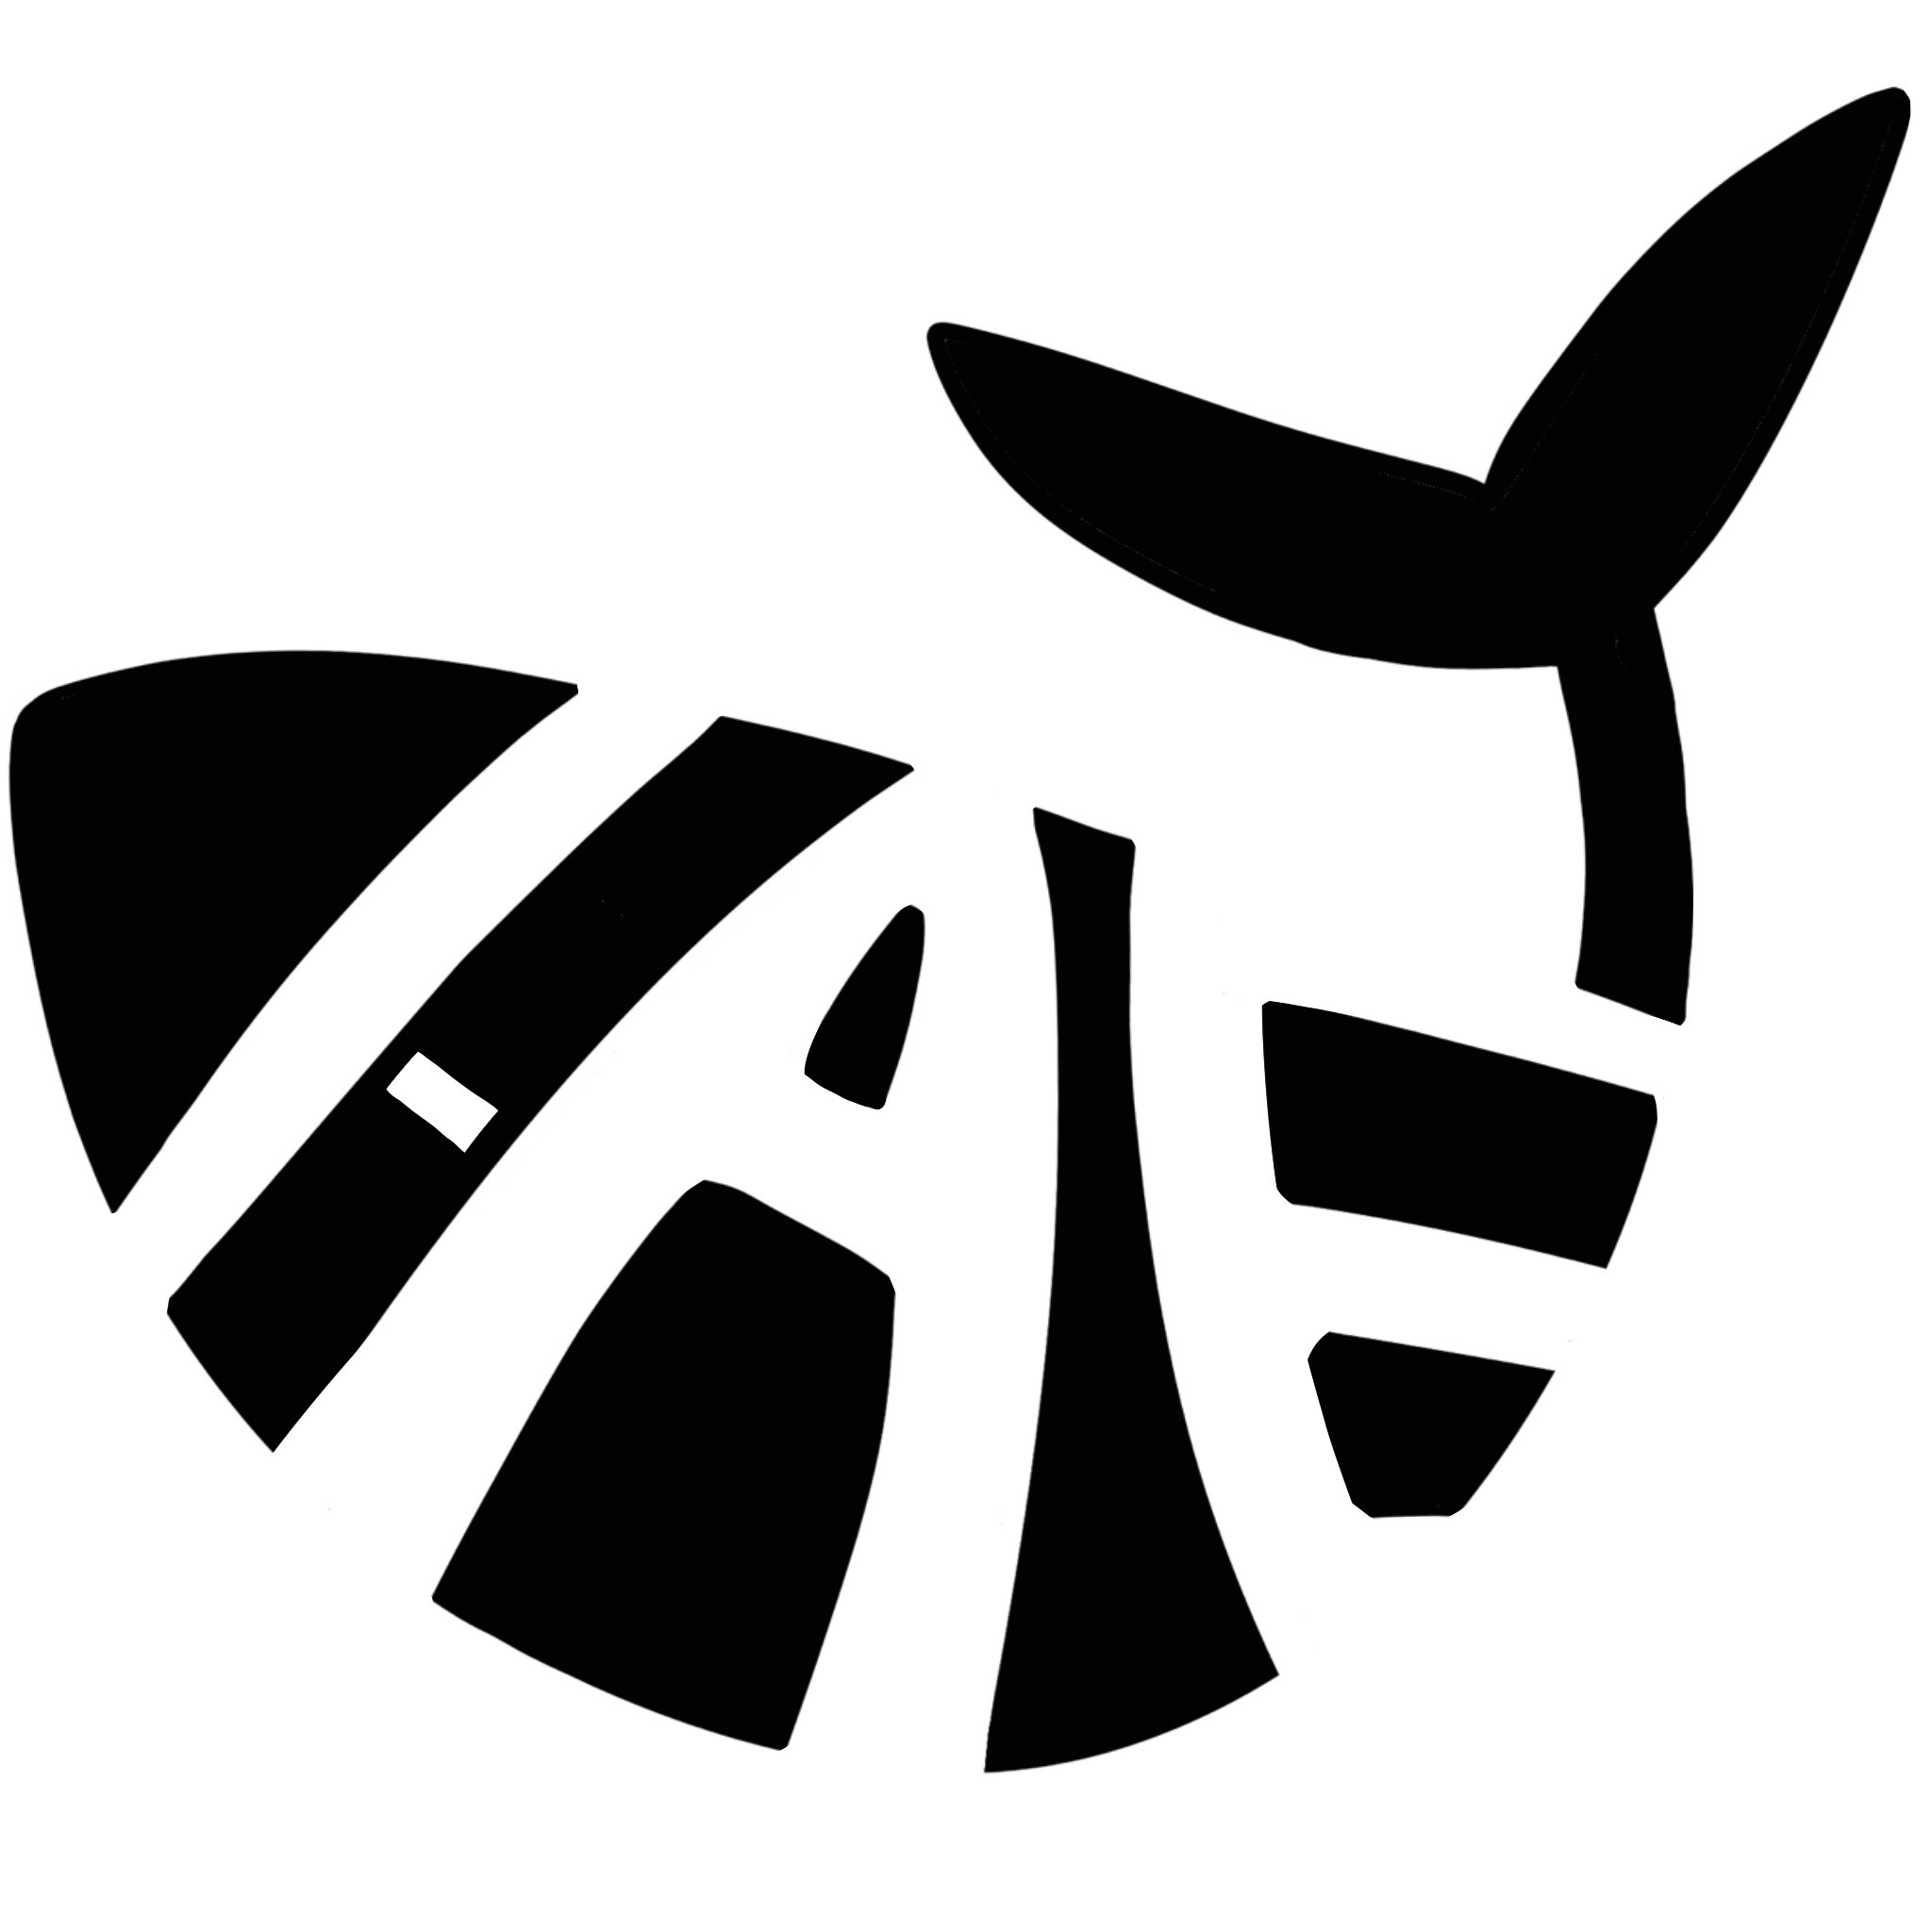 Institute for Art & Environment logo